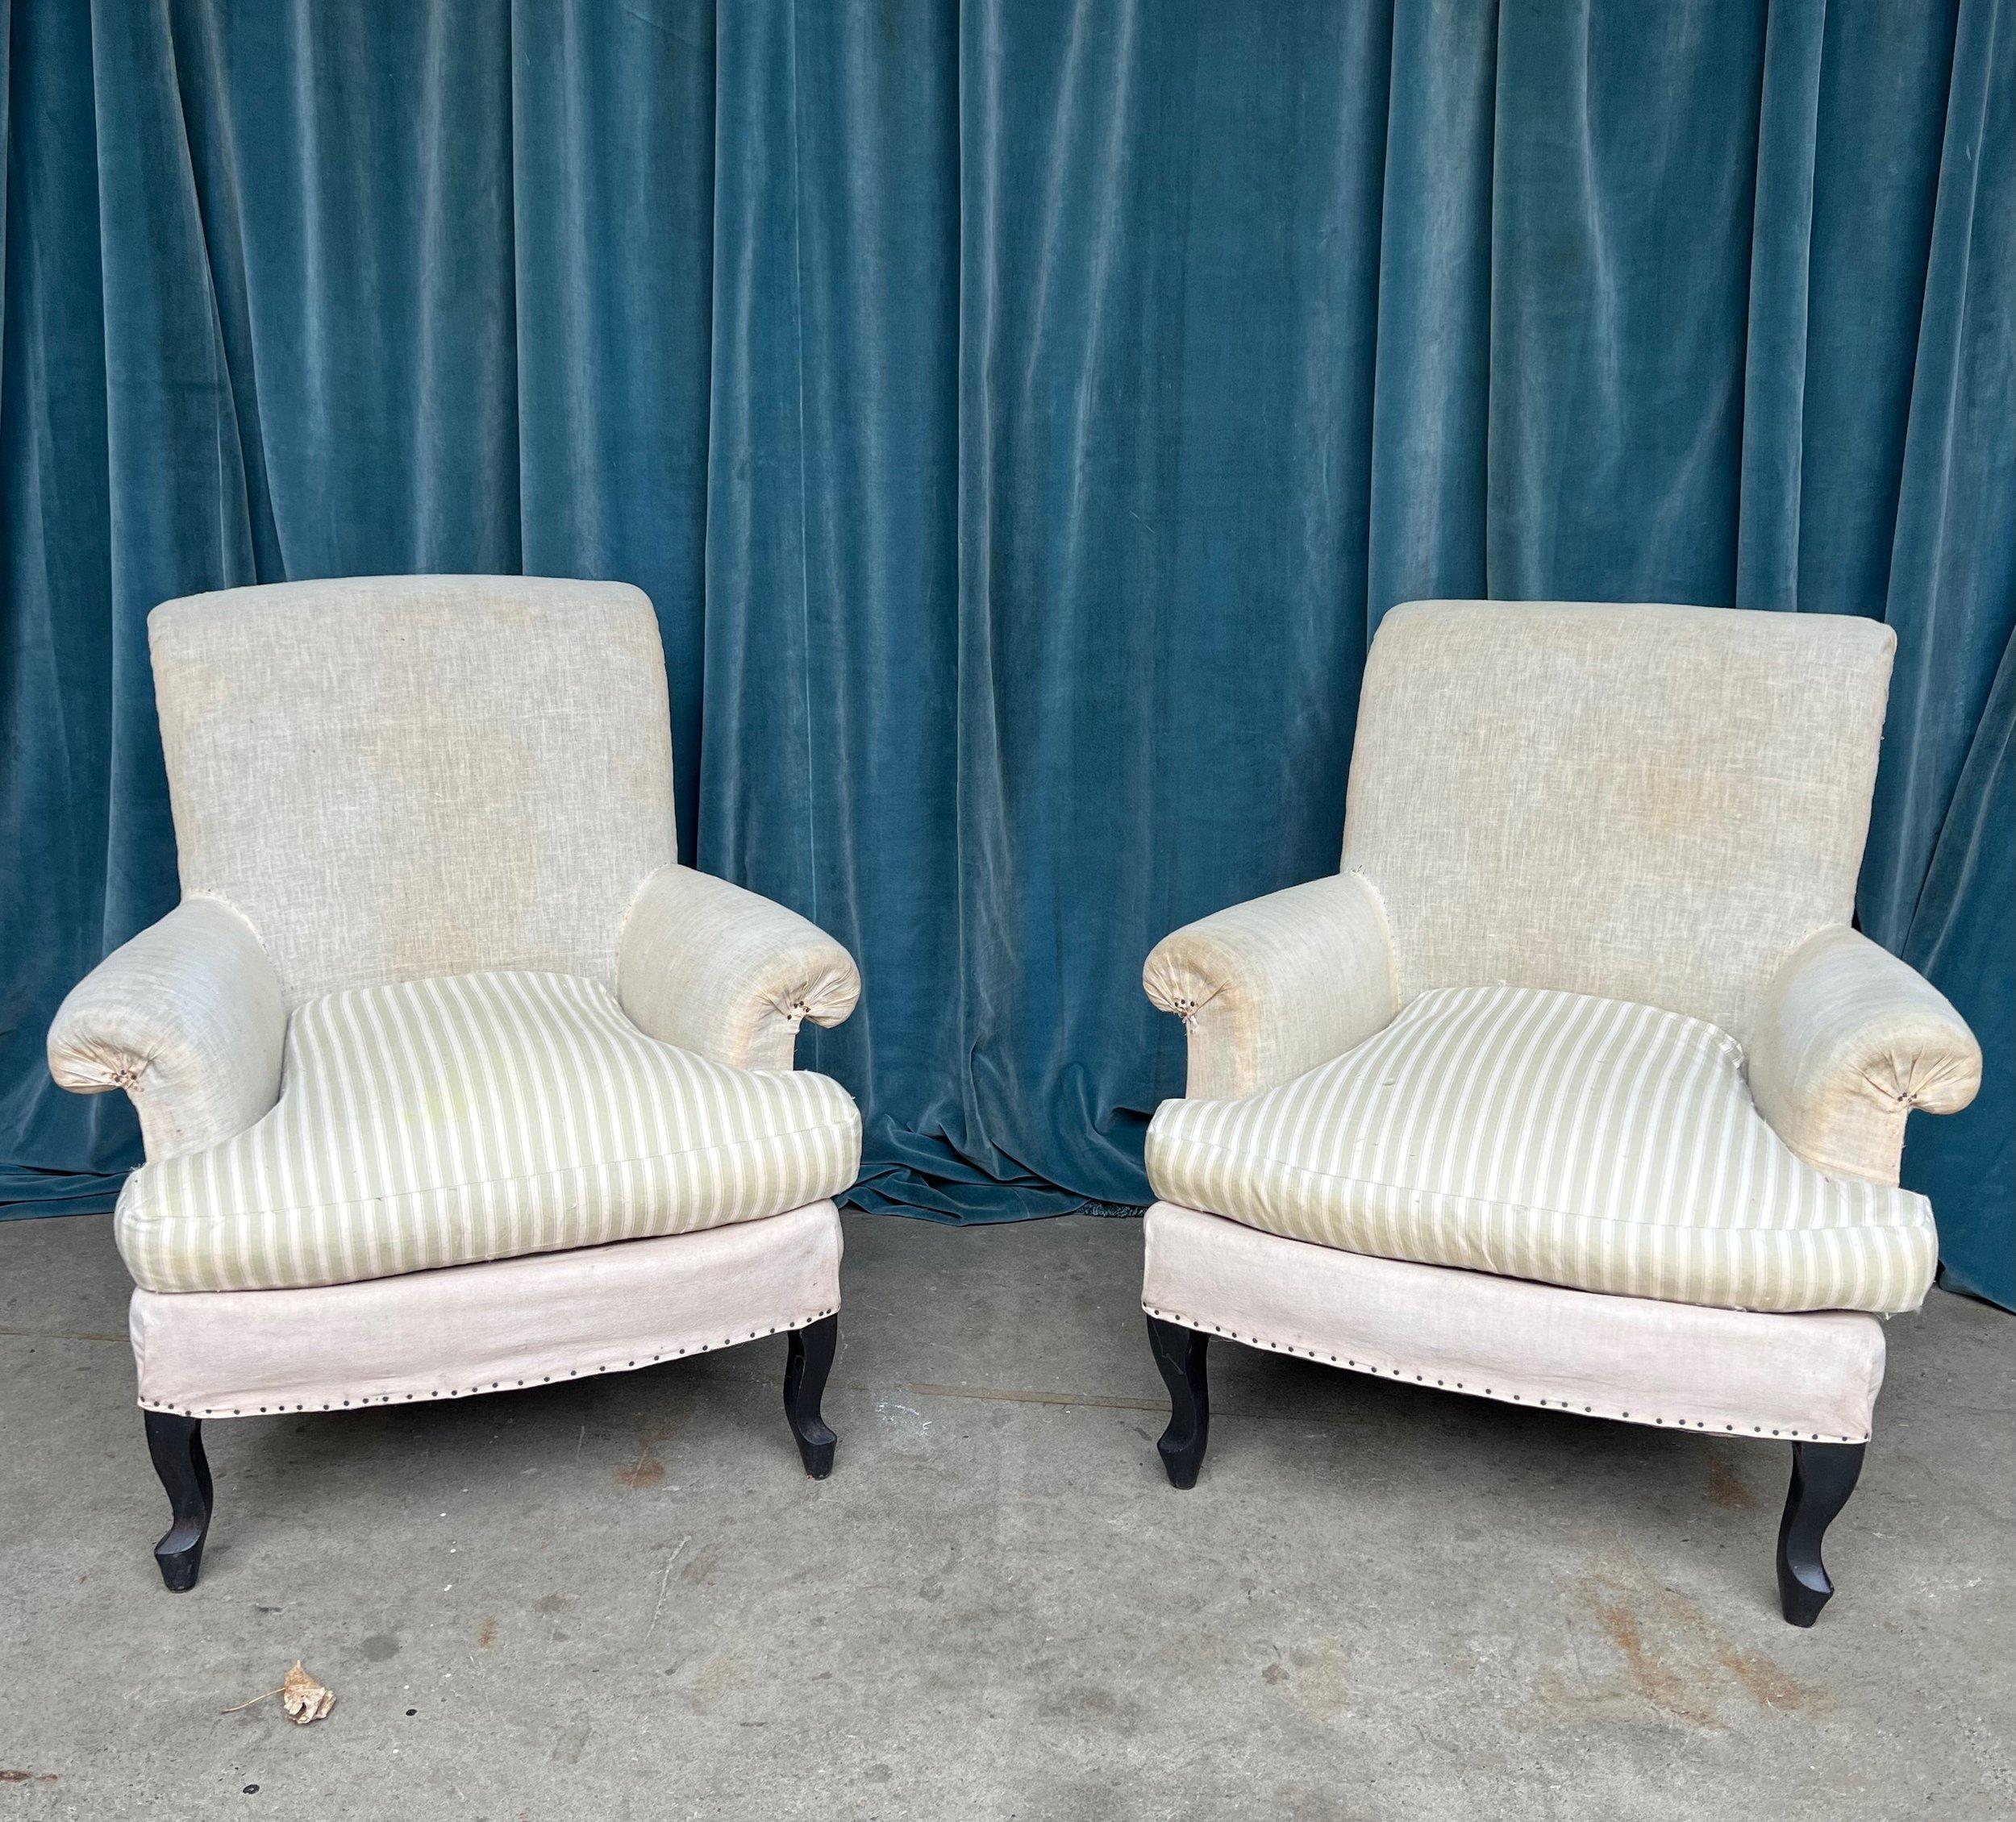 Paire de fauteuils Napoléon III français de la fin du XIXe siècle, très confortables et de petite taille, avec des coussins d'assise détachés. Ces chaises sont un bel exemple de style français avec leurs élégants pieds cabriole et leurs dossiers à